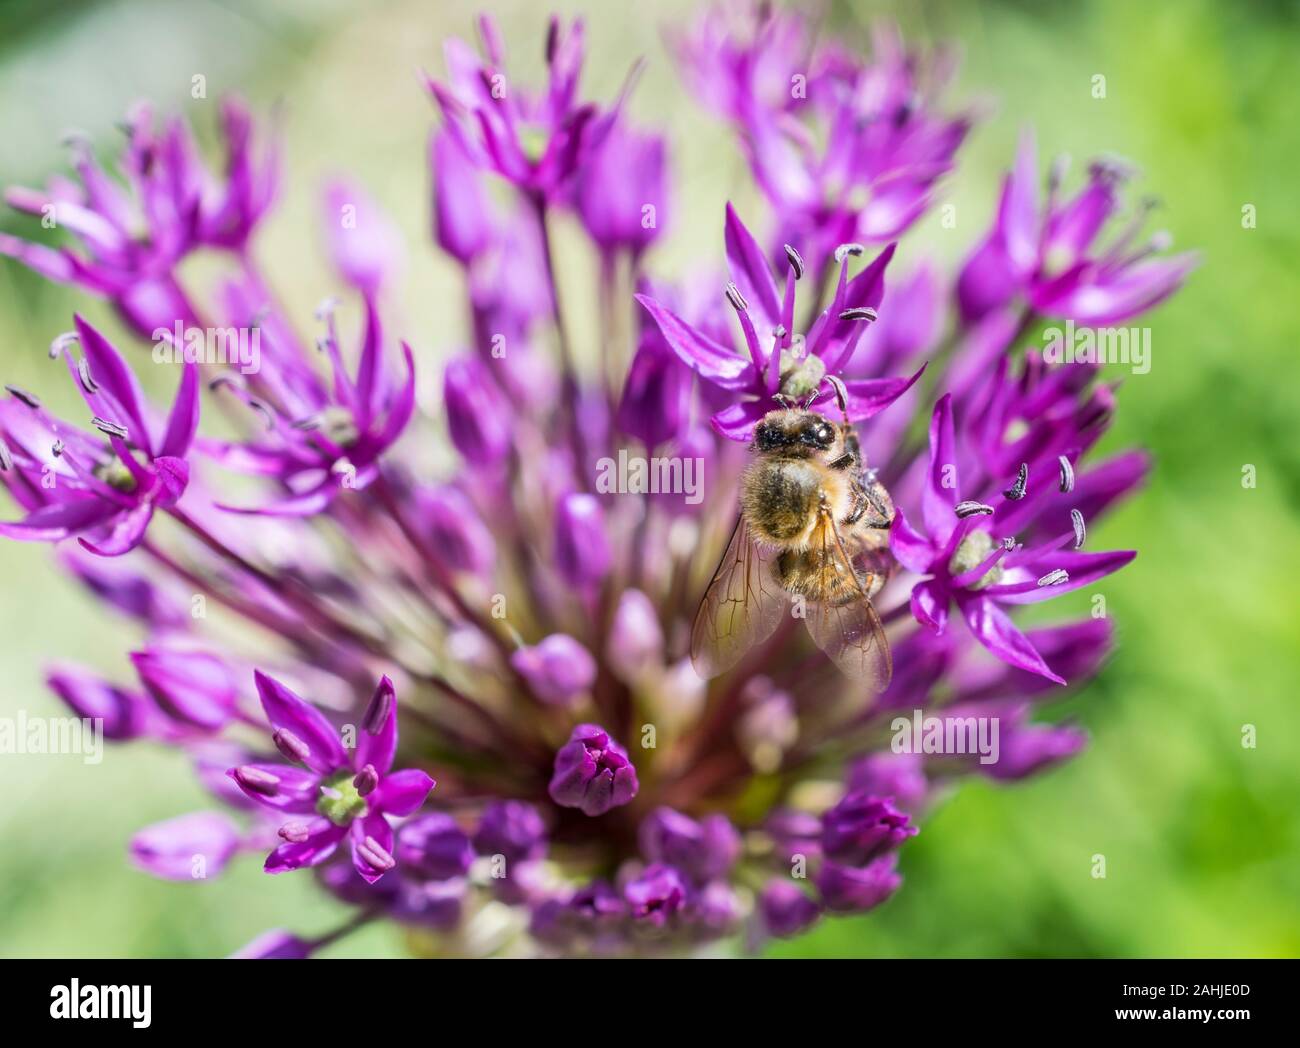 allium flowers with bee Stock Photo